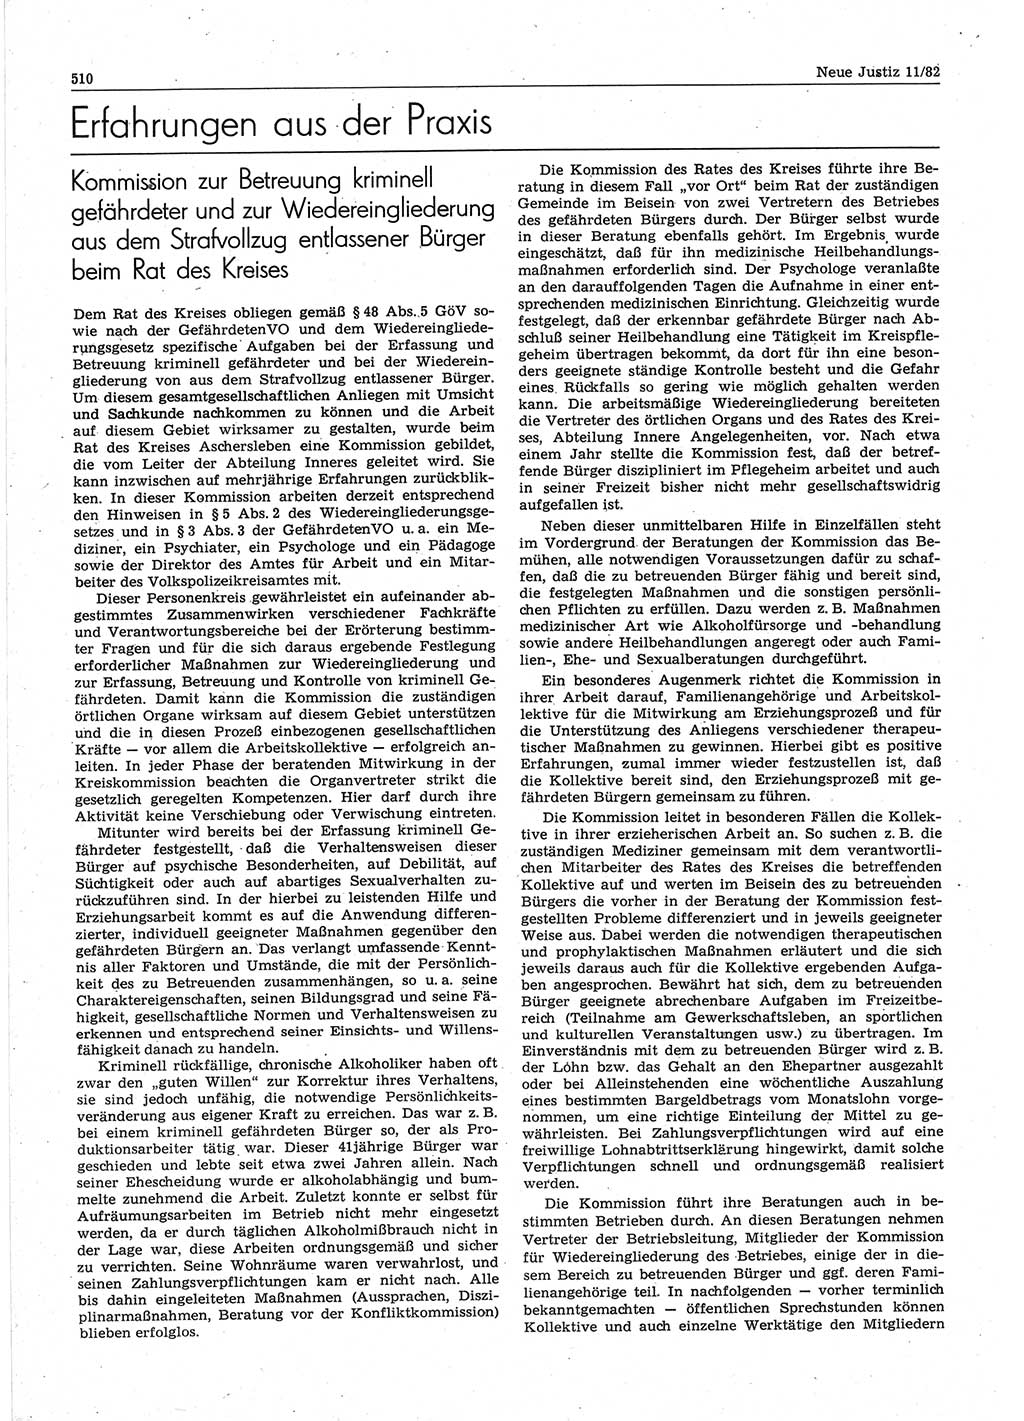 Neue Justiz (NJ), Zeitschrift für sozialistisches Recht und Gesetzlichkeit [Deutsche Demokratische Republik (DDR)], 36. Jahrgang 1982, Seite 510 (NJ DDR 1982, S. 510)